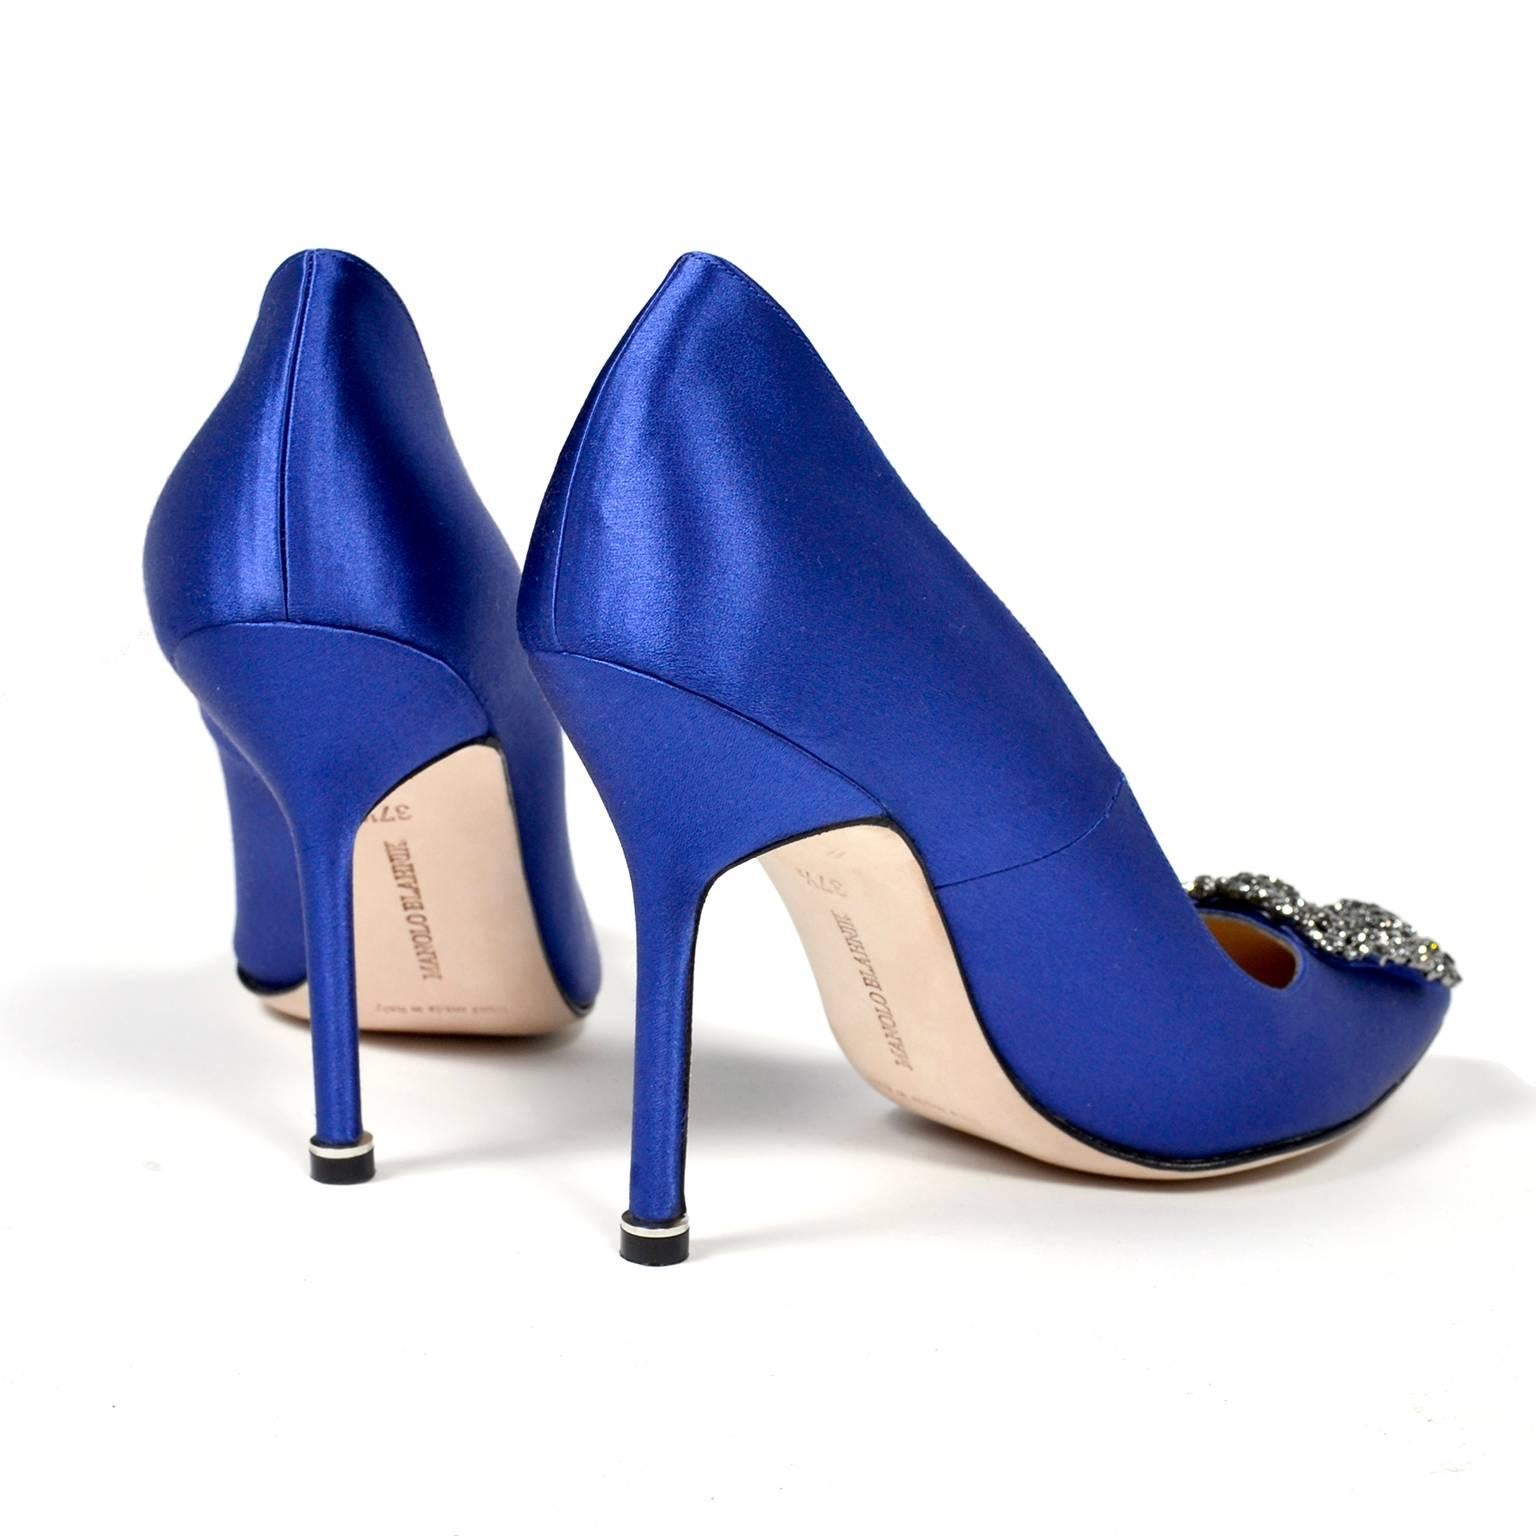 Women's New Manolo Blahnik Carrie Bradshaw Blue Satin Shoes Lanza Heels in box 37.5